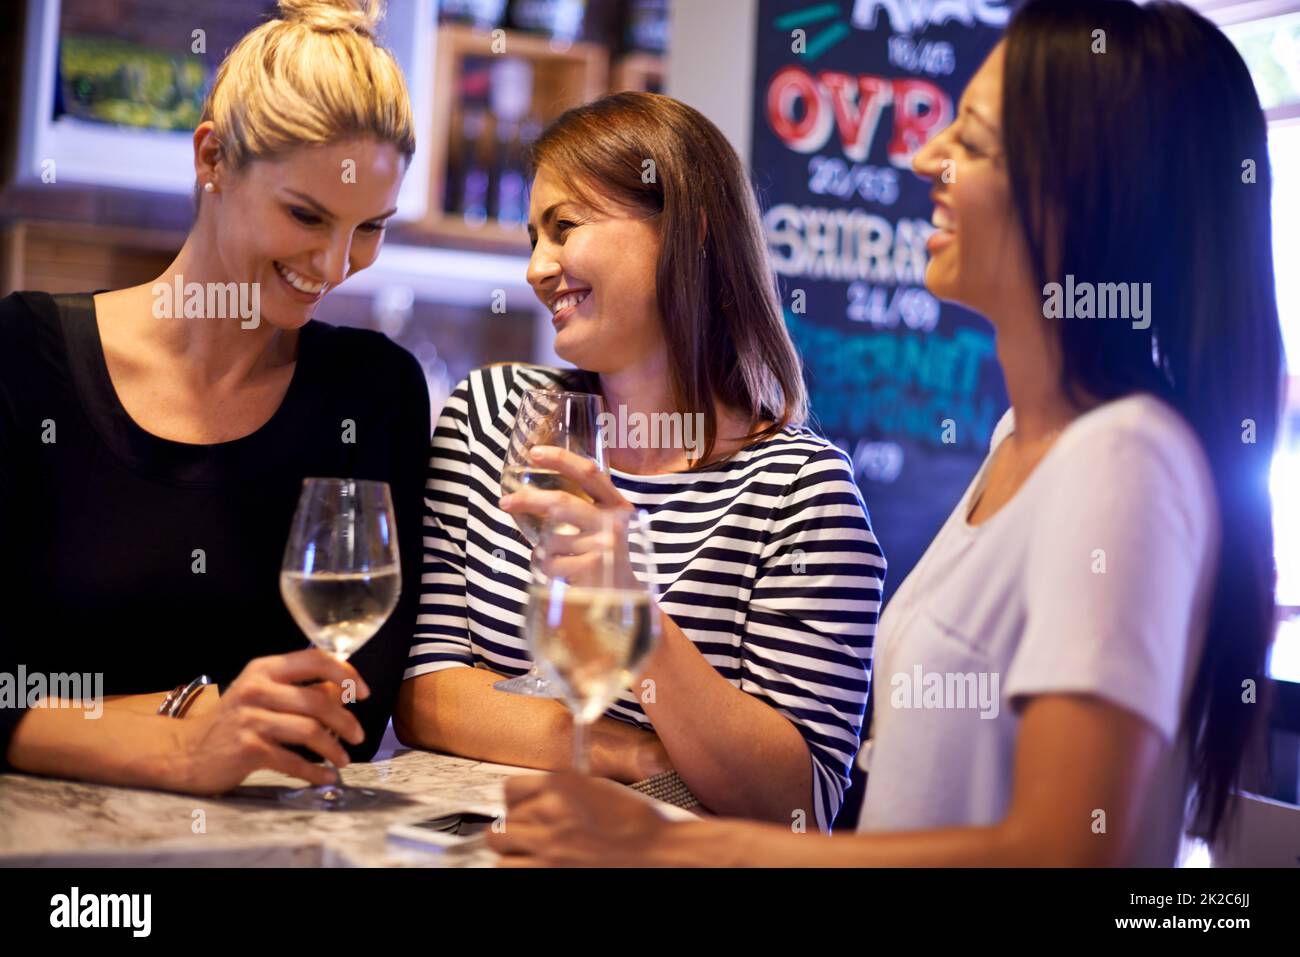 Notte ragazze. Un taglio corto di tre donne socializzare in un ristorante. Foto Stock